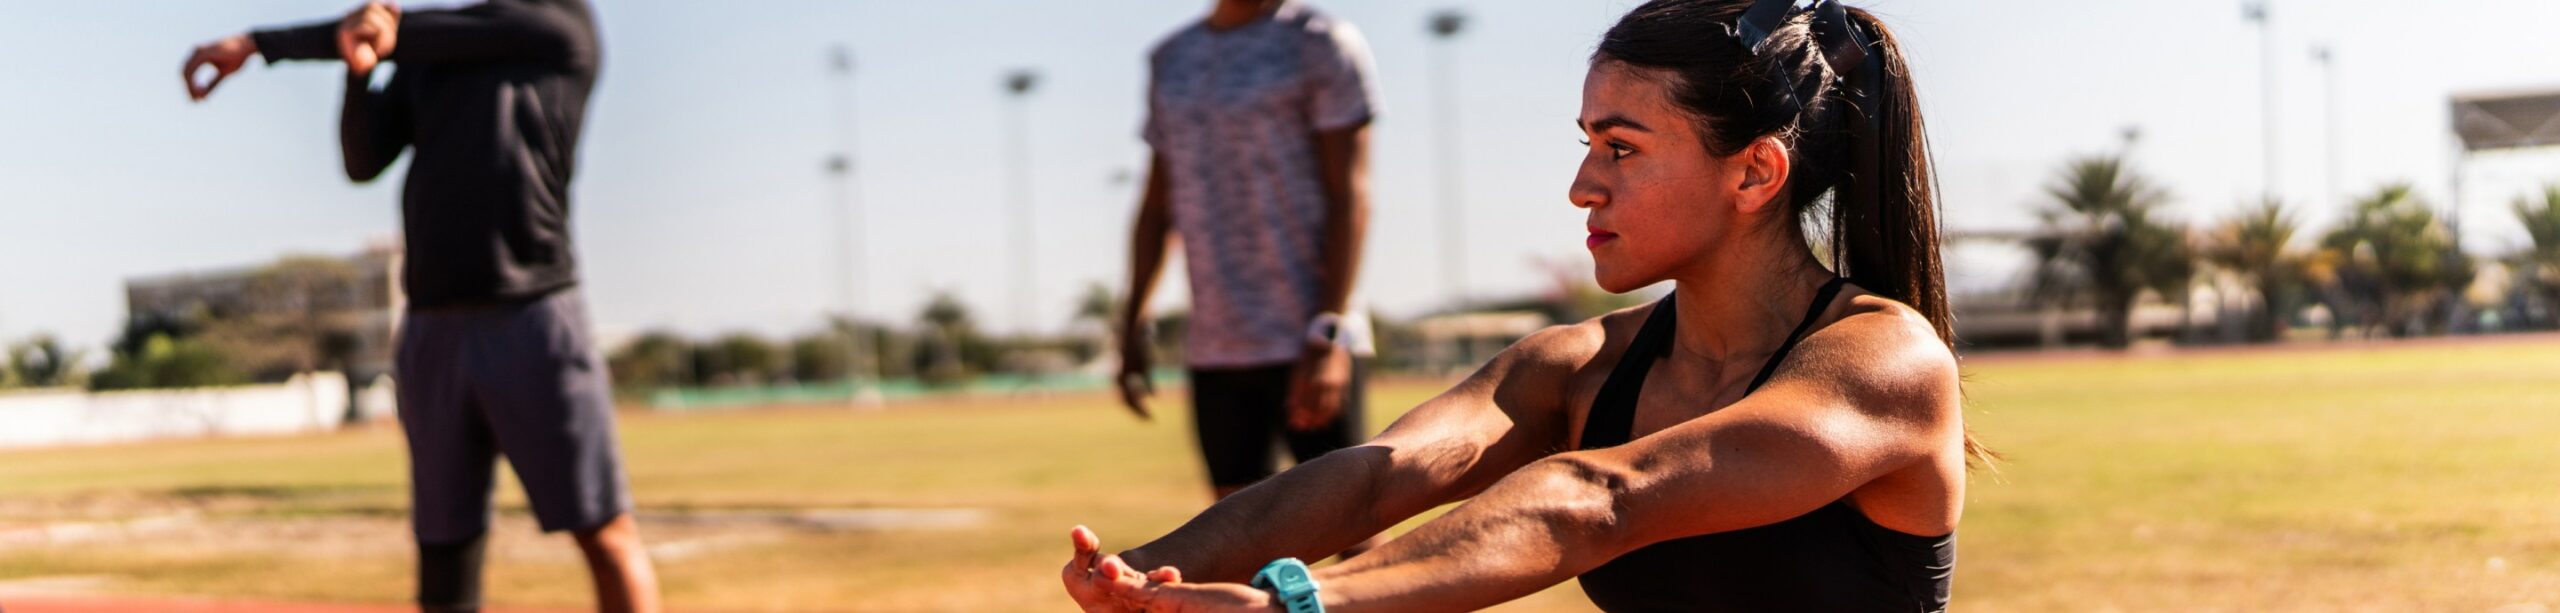 Comment entretenir sa condition physique selon les sportifs de haut niveau | Clinalliance | Sport